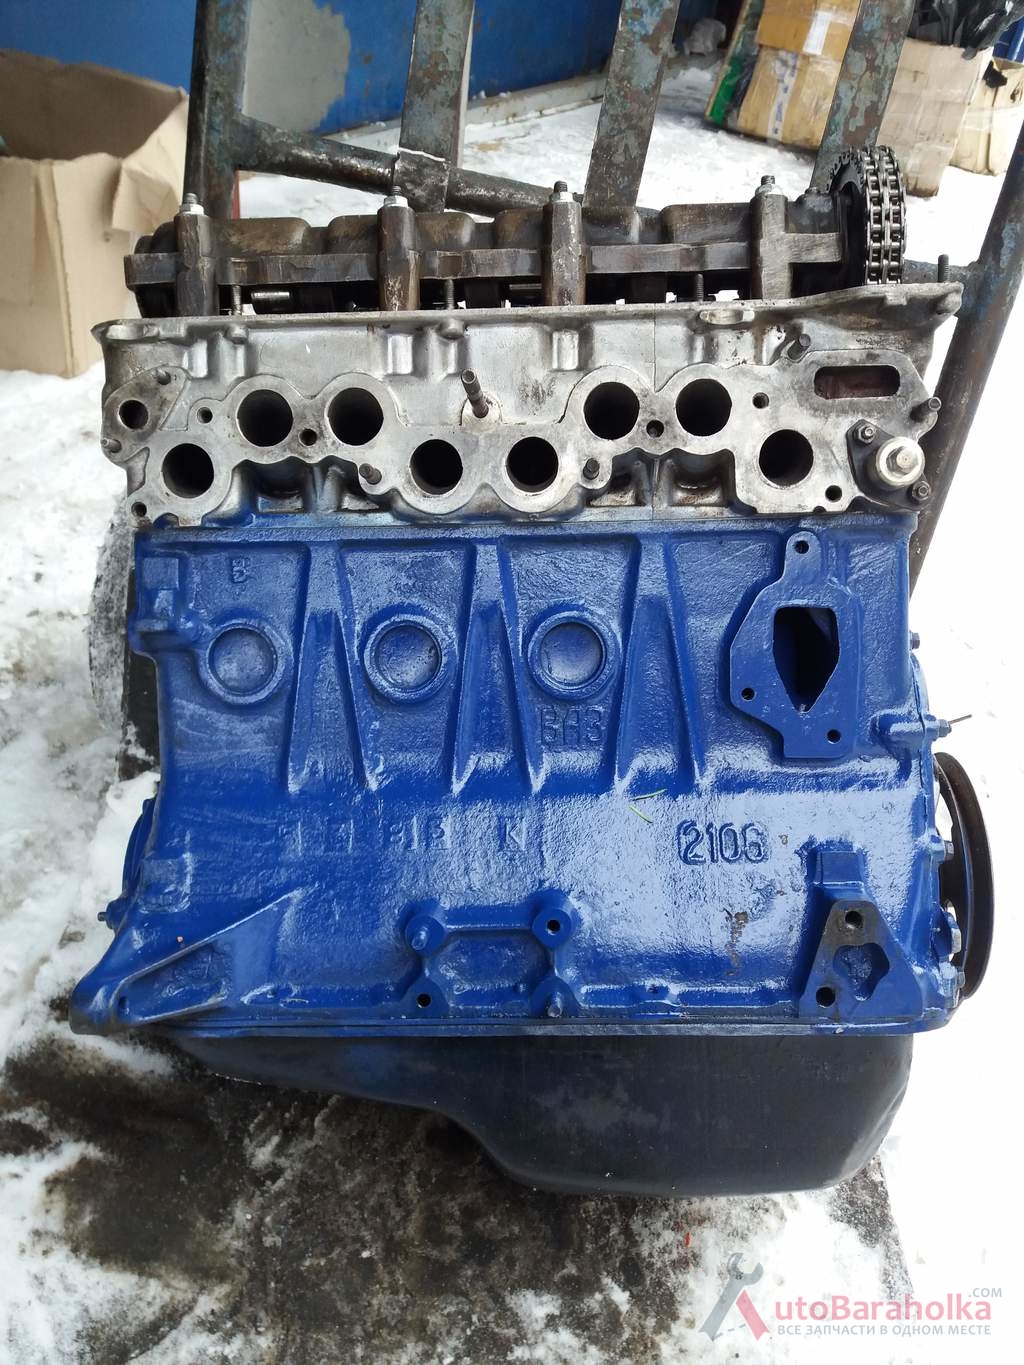 Продам Двигатель ВАЗ 2106 с экспортной машины, после кап ремонта(первый ремонт).Гарантия 3 месяца Полтава